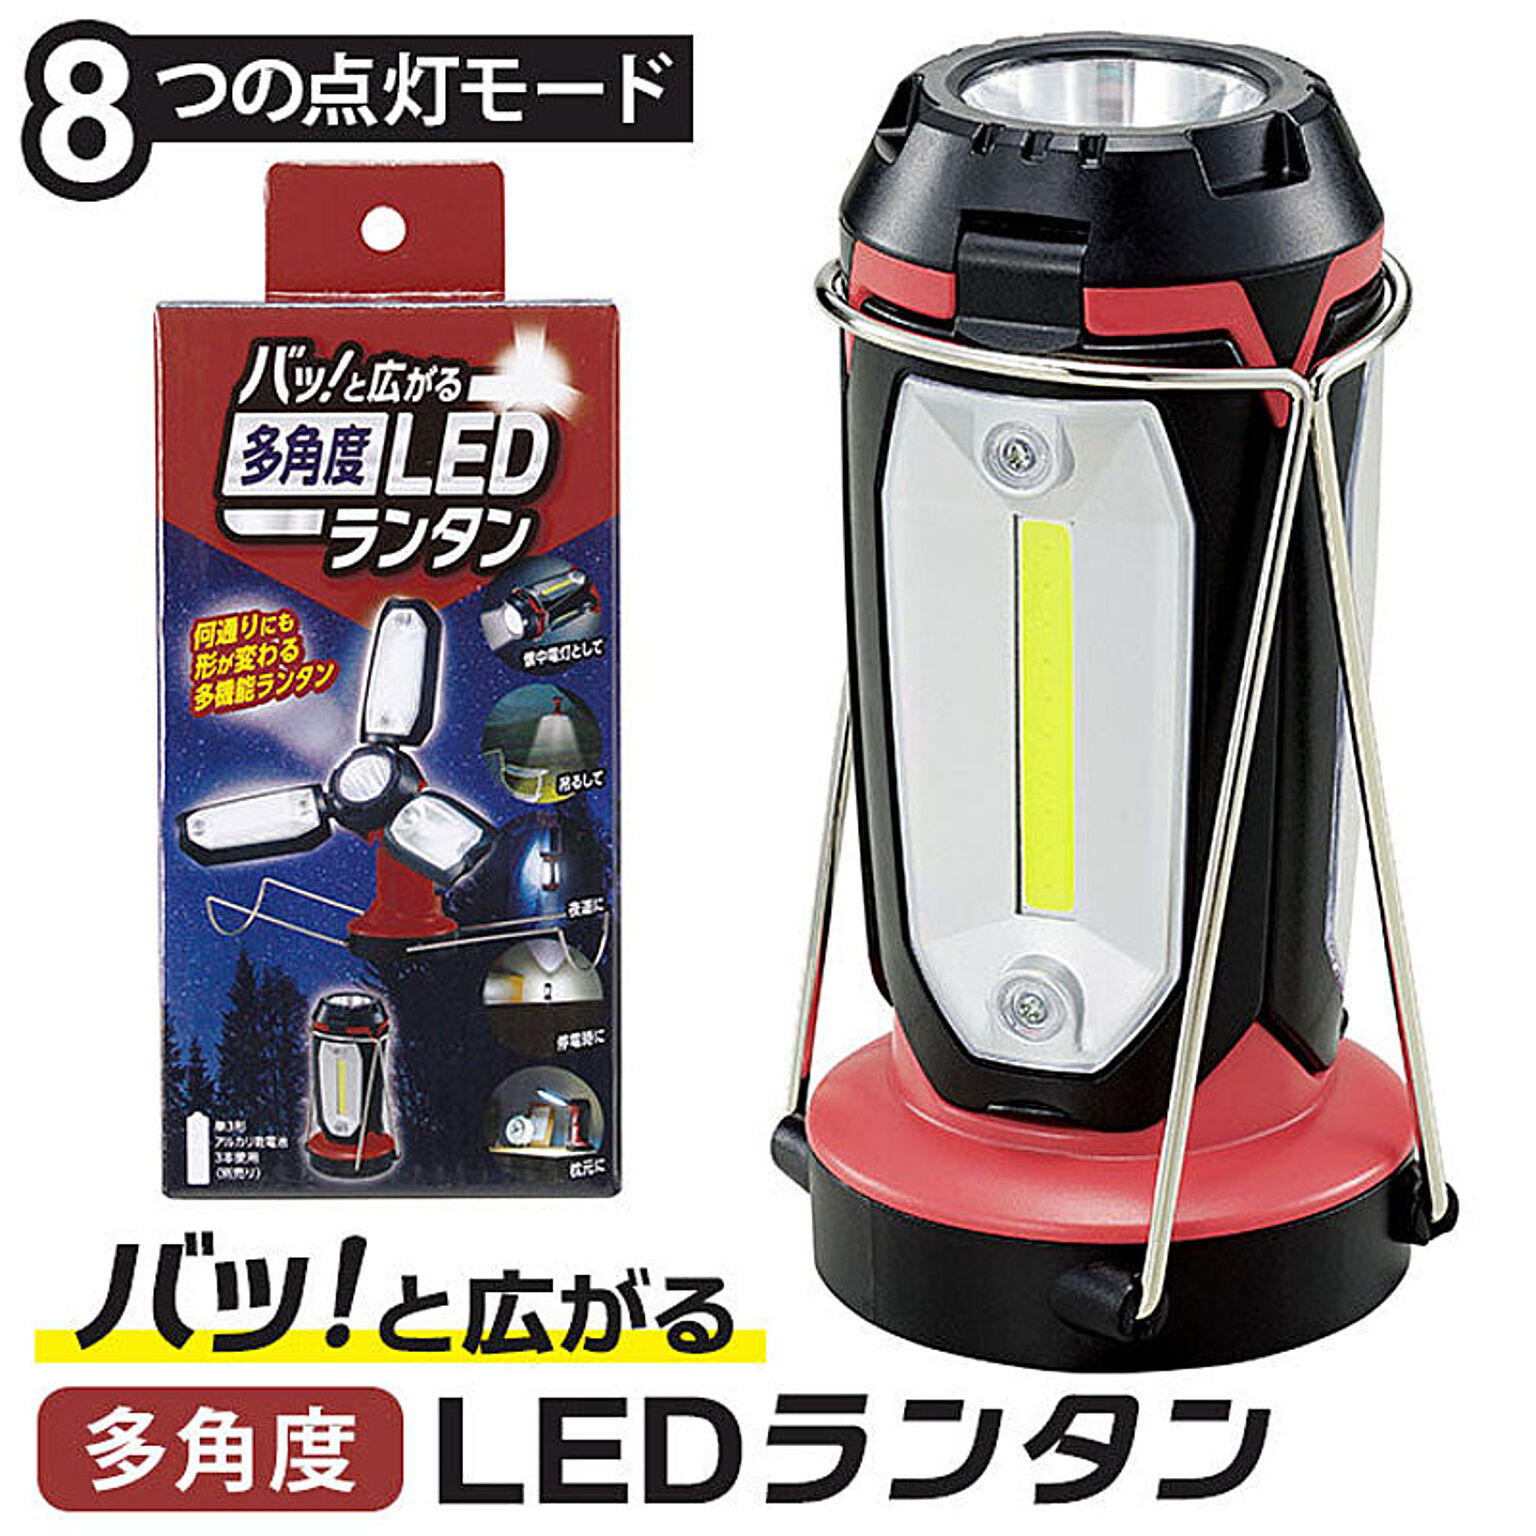 ランタン led ライト 電池式 防犯灯